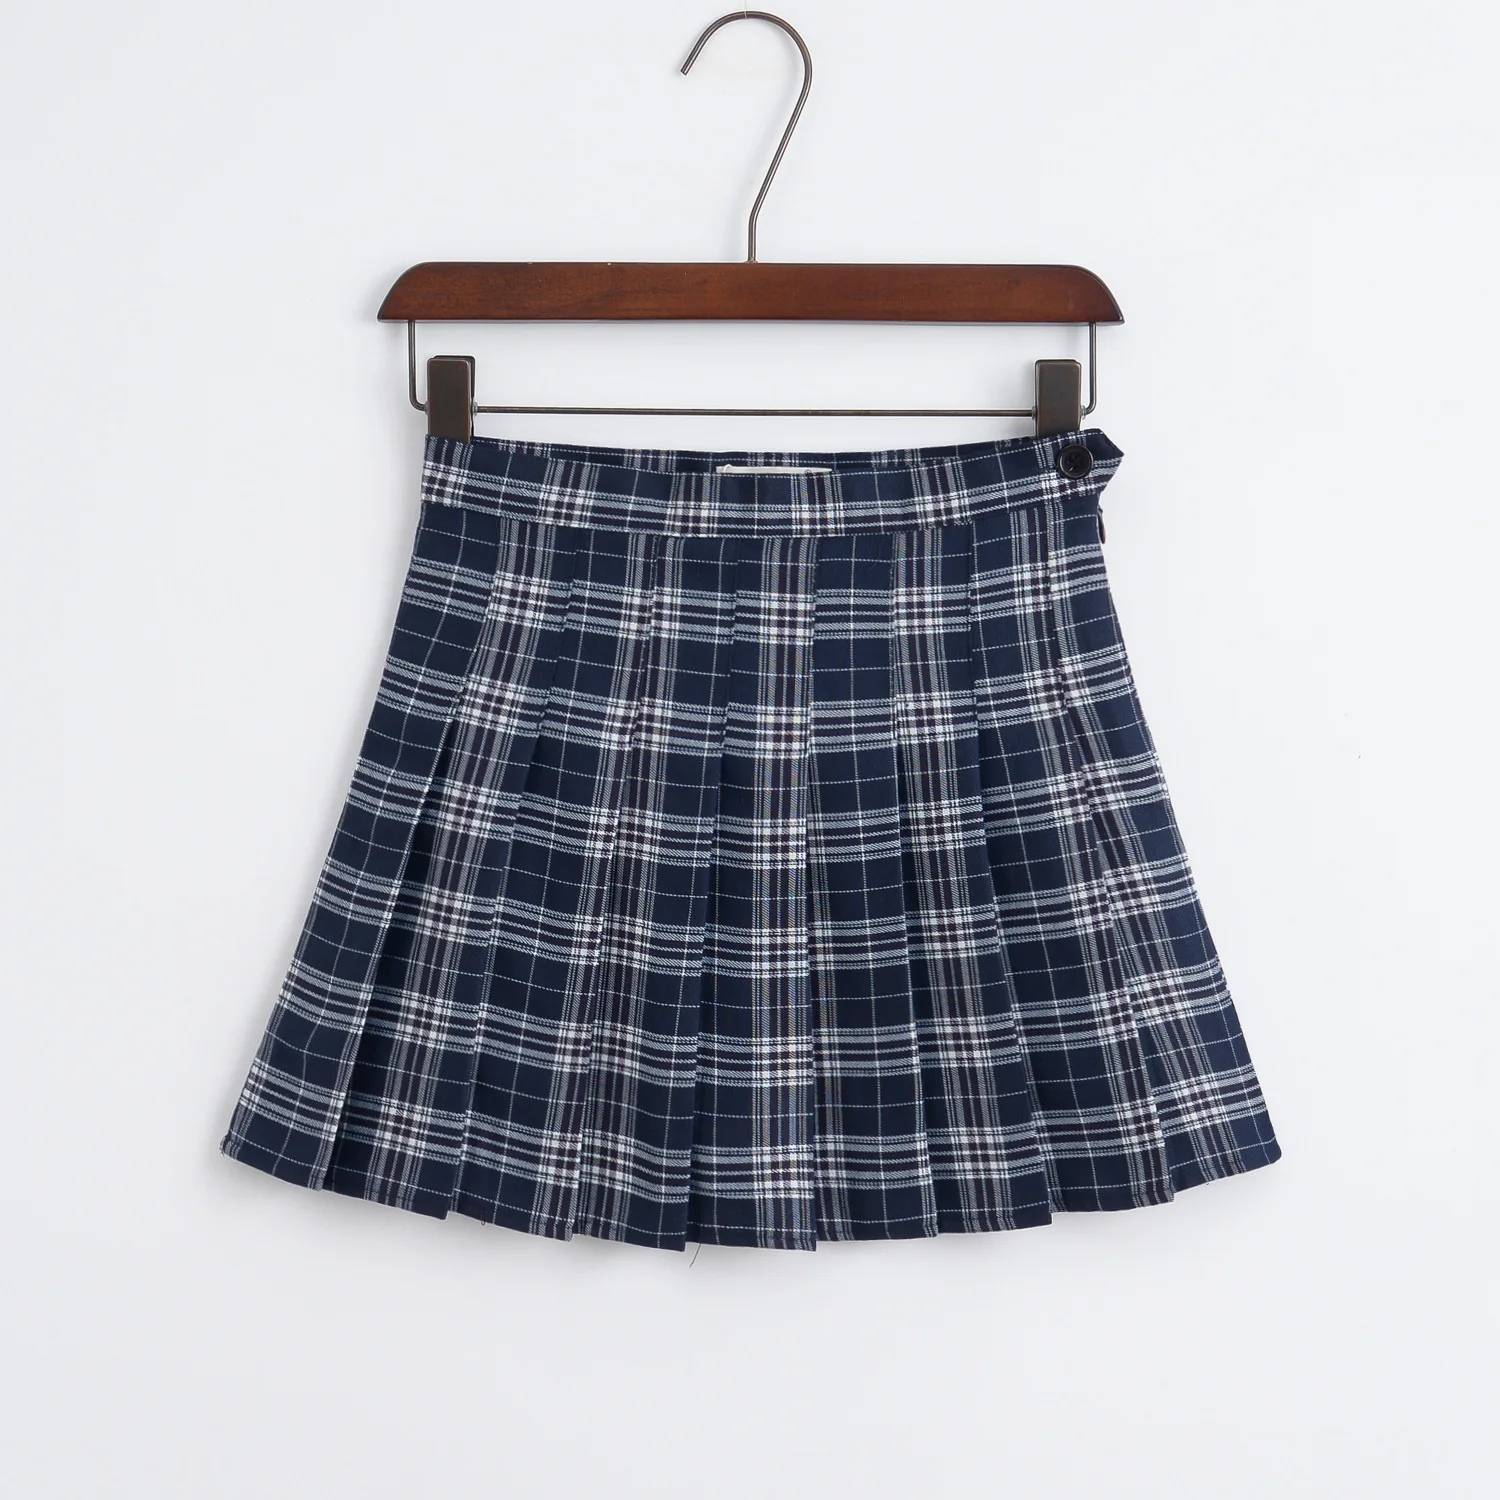 VEVEFHUANG, женская новая Милая Короткая юбка с высокой талией, короткая юбка, японская школьная плиссированная клетчатая юбка, спортивные теннисные юбки для женщин